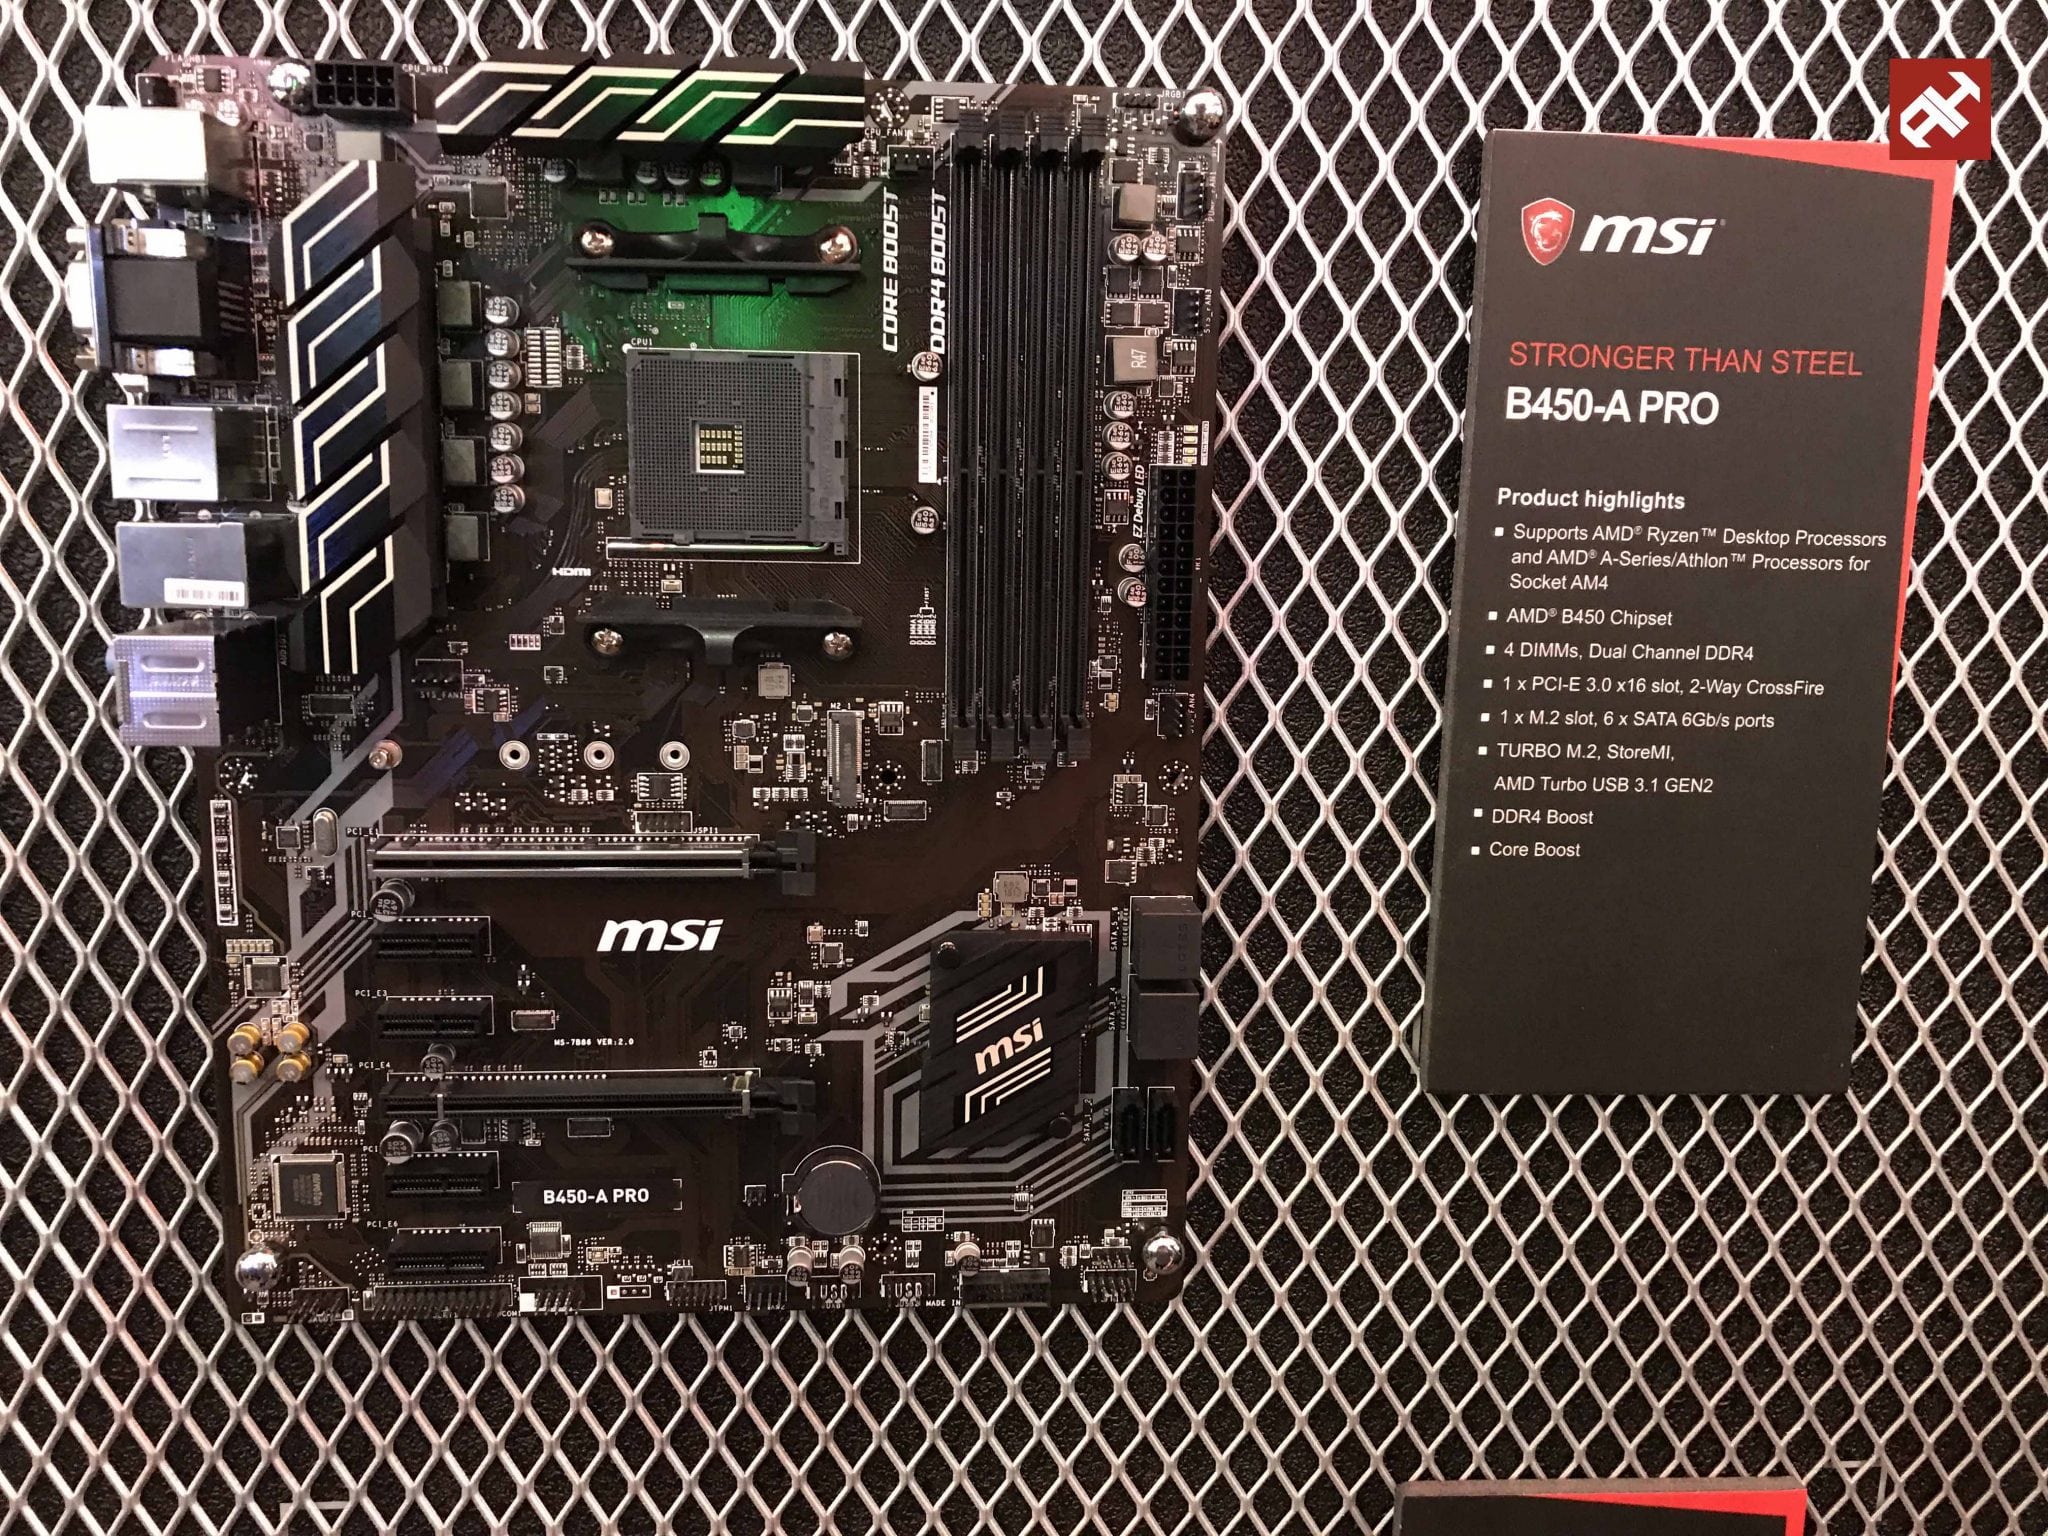 معرض Computex18: زيارتنا لجناح MSI ورؤيتنا لأول اللوحات الأم بشريحة AMD B450